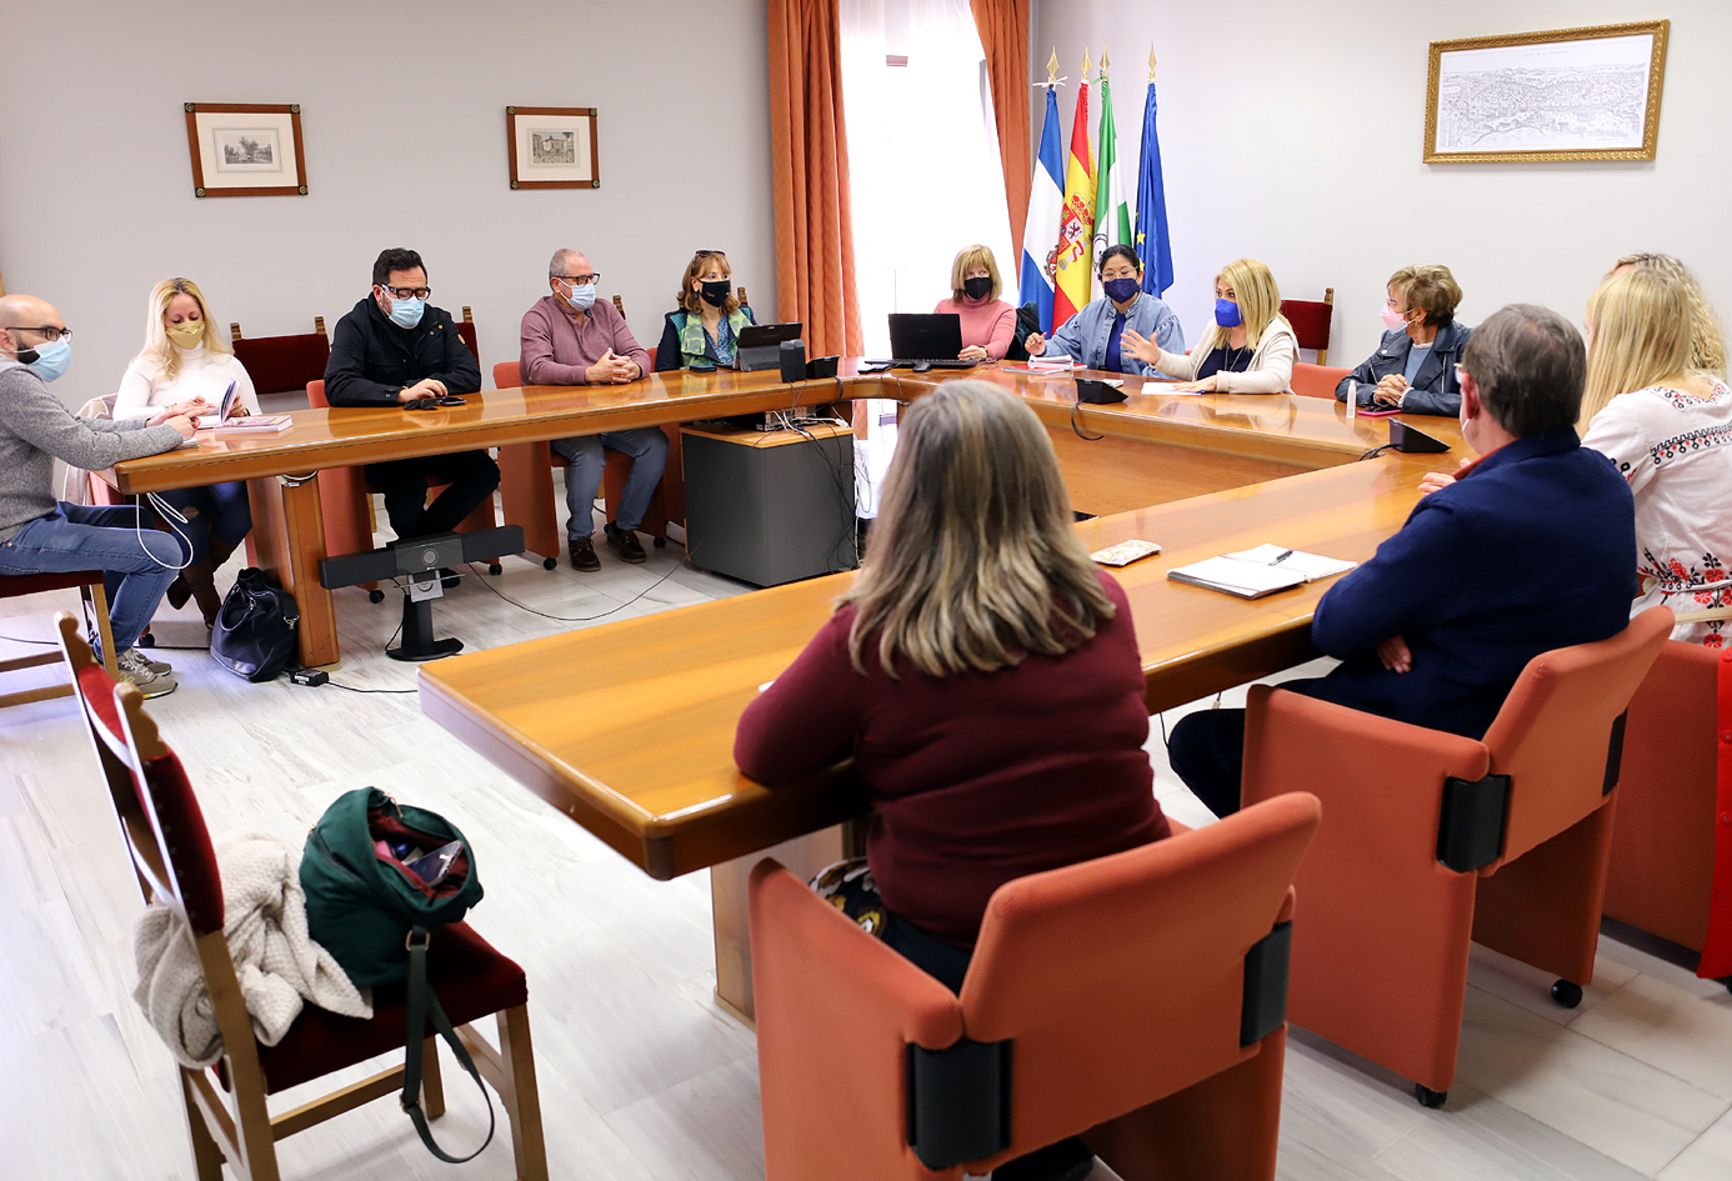 El Ayuntamiento, presidido por la alcaldesa Mamen Sánchez, coordina un dispositivo de ayuda a refugiados tras la invasión rusa con entidades de acogida e integración.